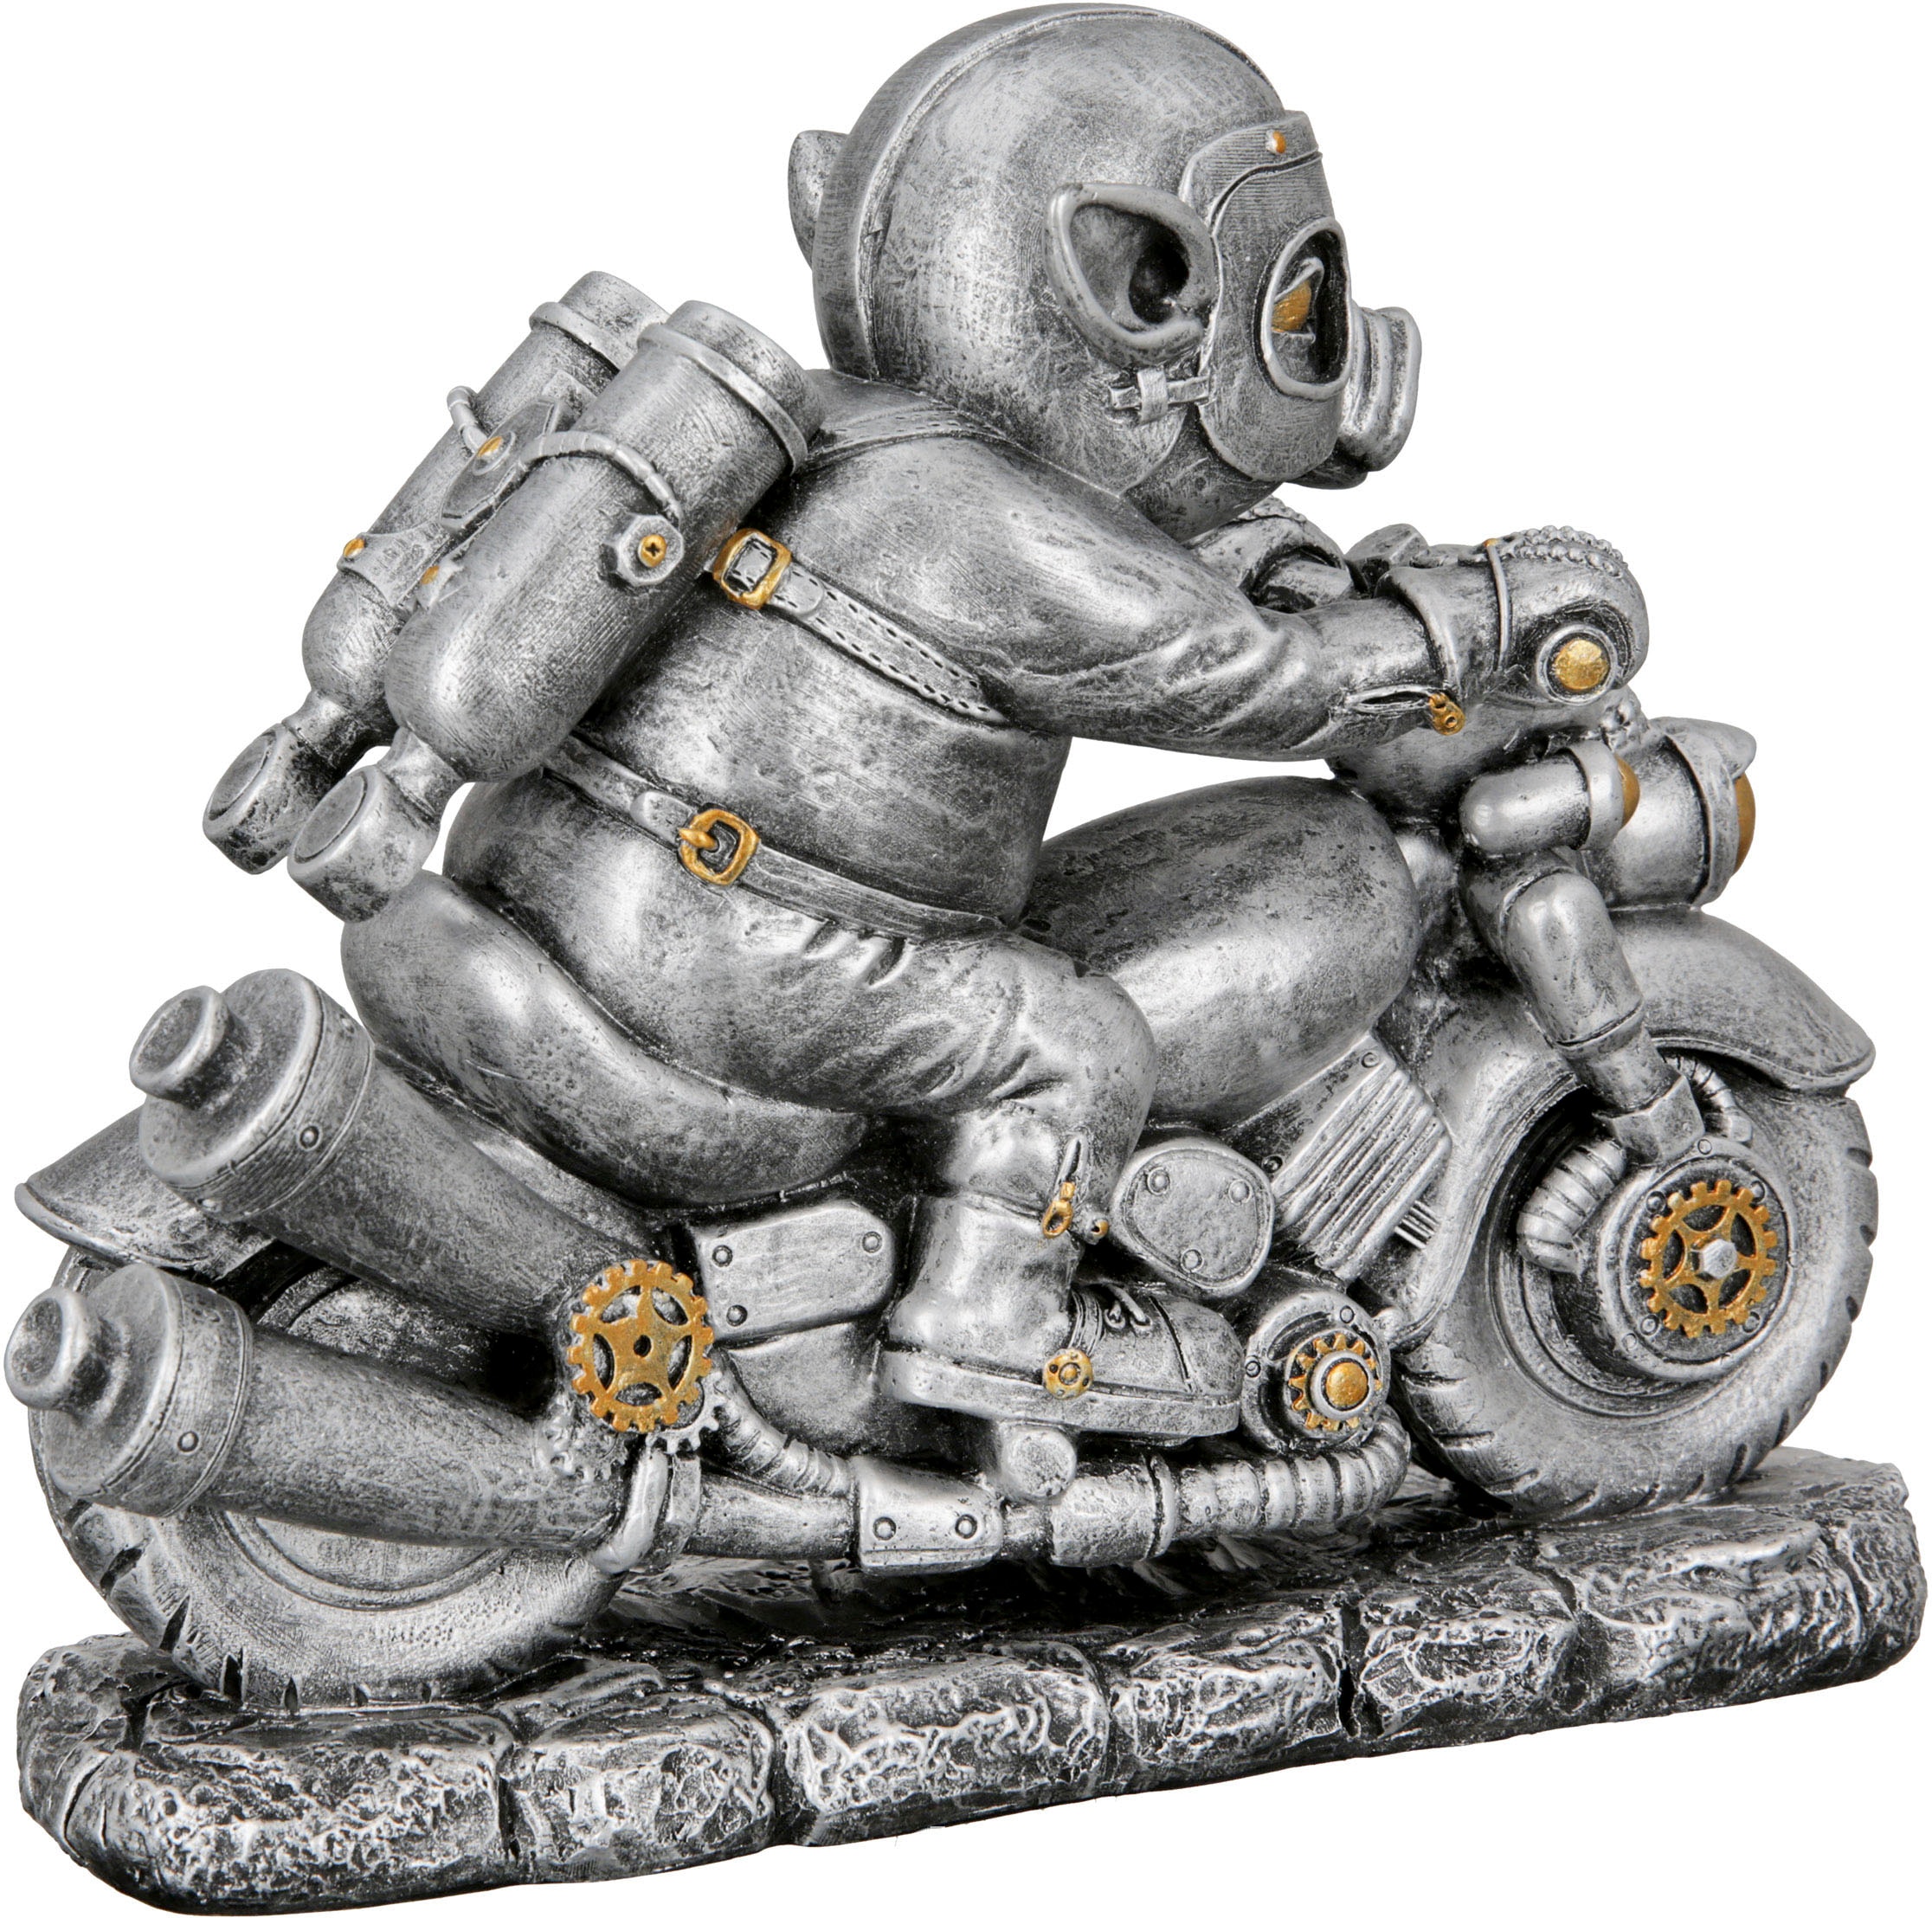 Casablanca by kaufen »Skulptur Steampunk Motor-Pig« Gilde Tierfigur jetzt